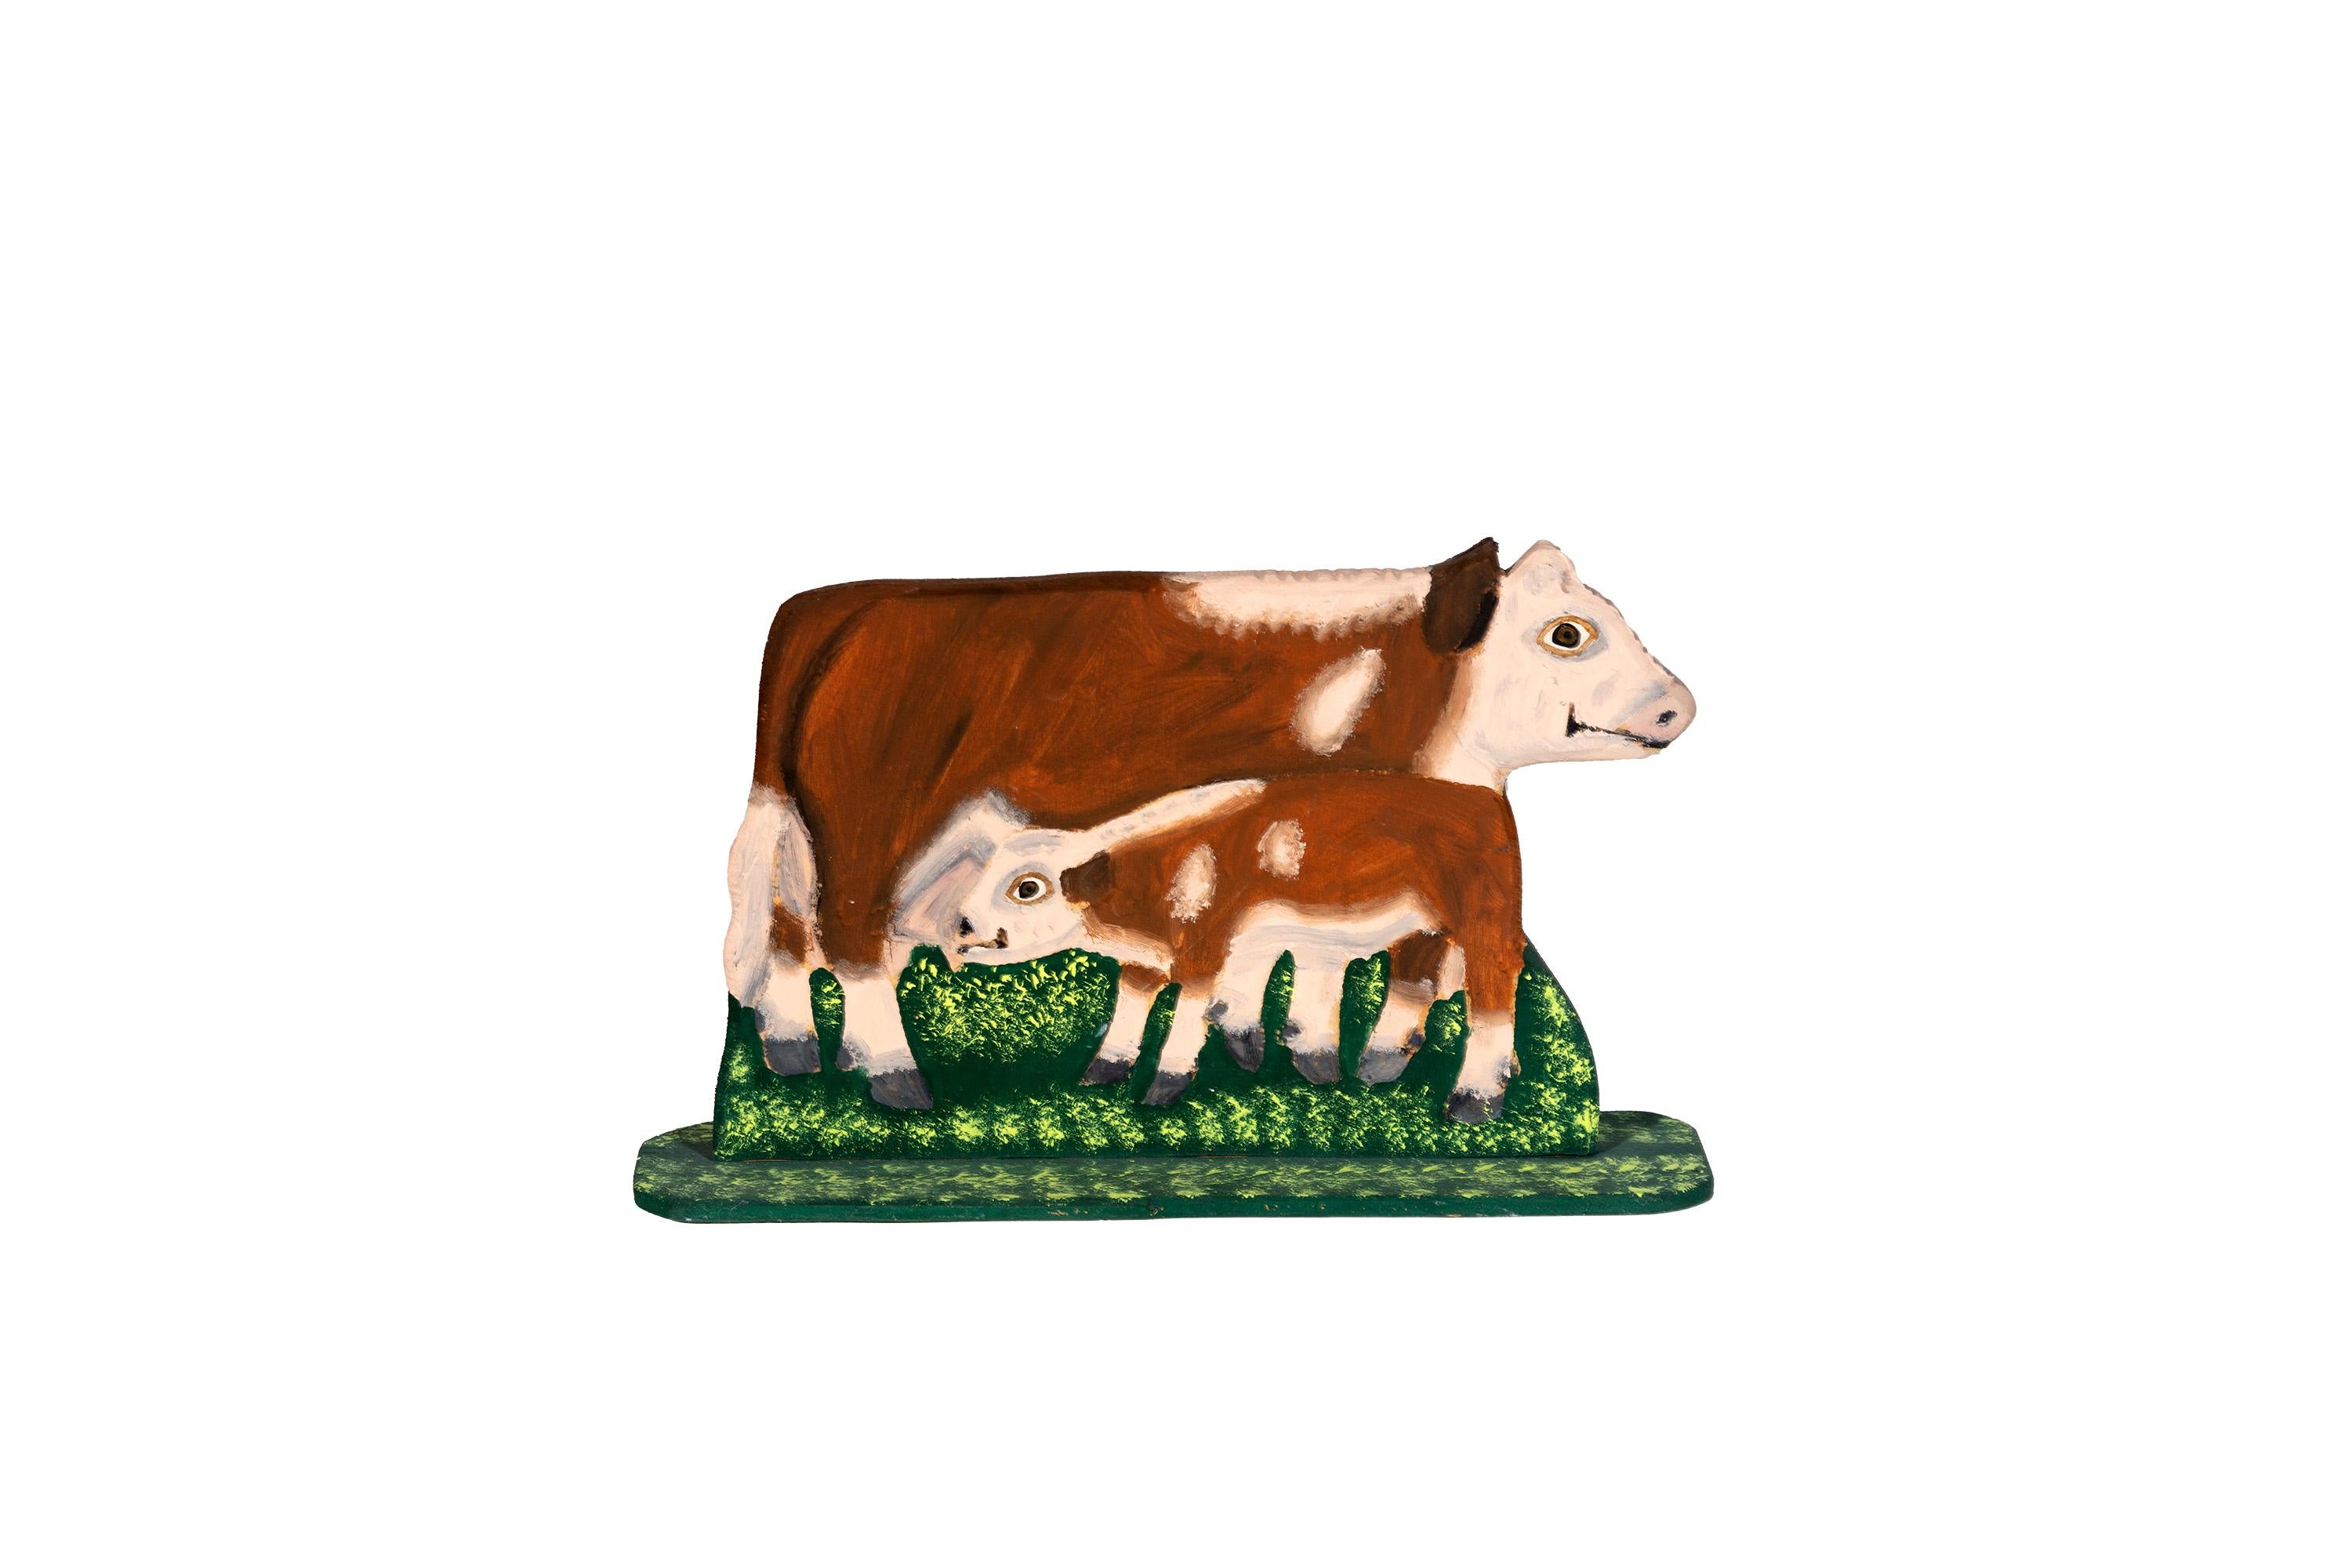 Menno Figurative Sculpture – Folk Art Cow' Signiert vom Künstler, Geschenk, kleine Skulptur, Classic deco